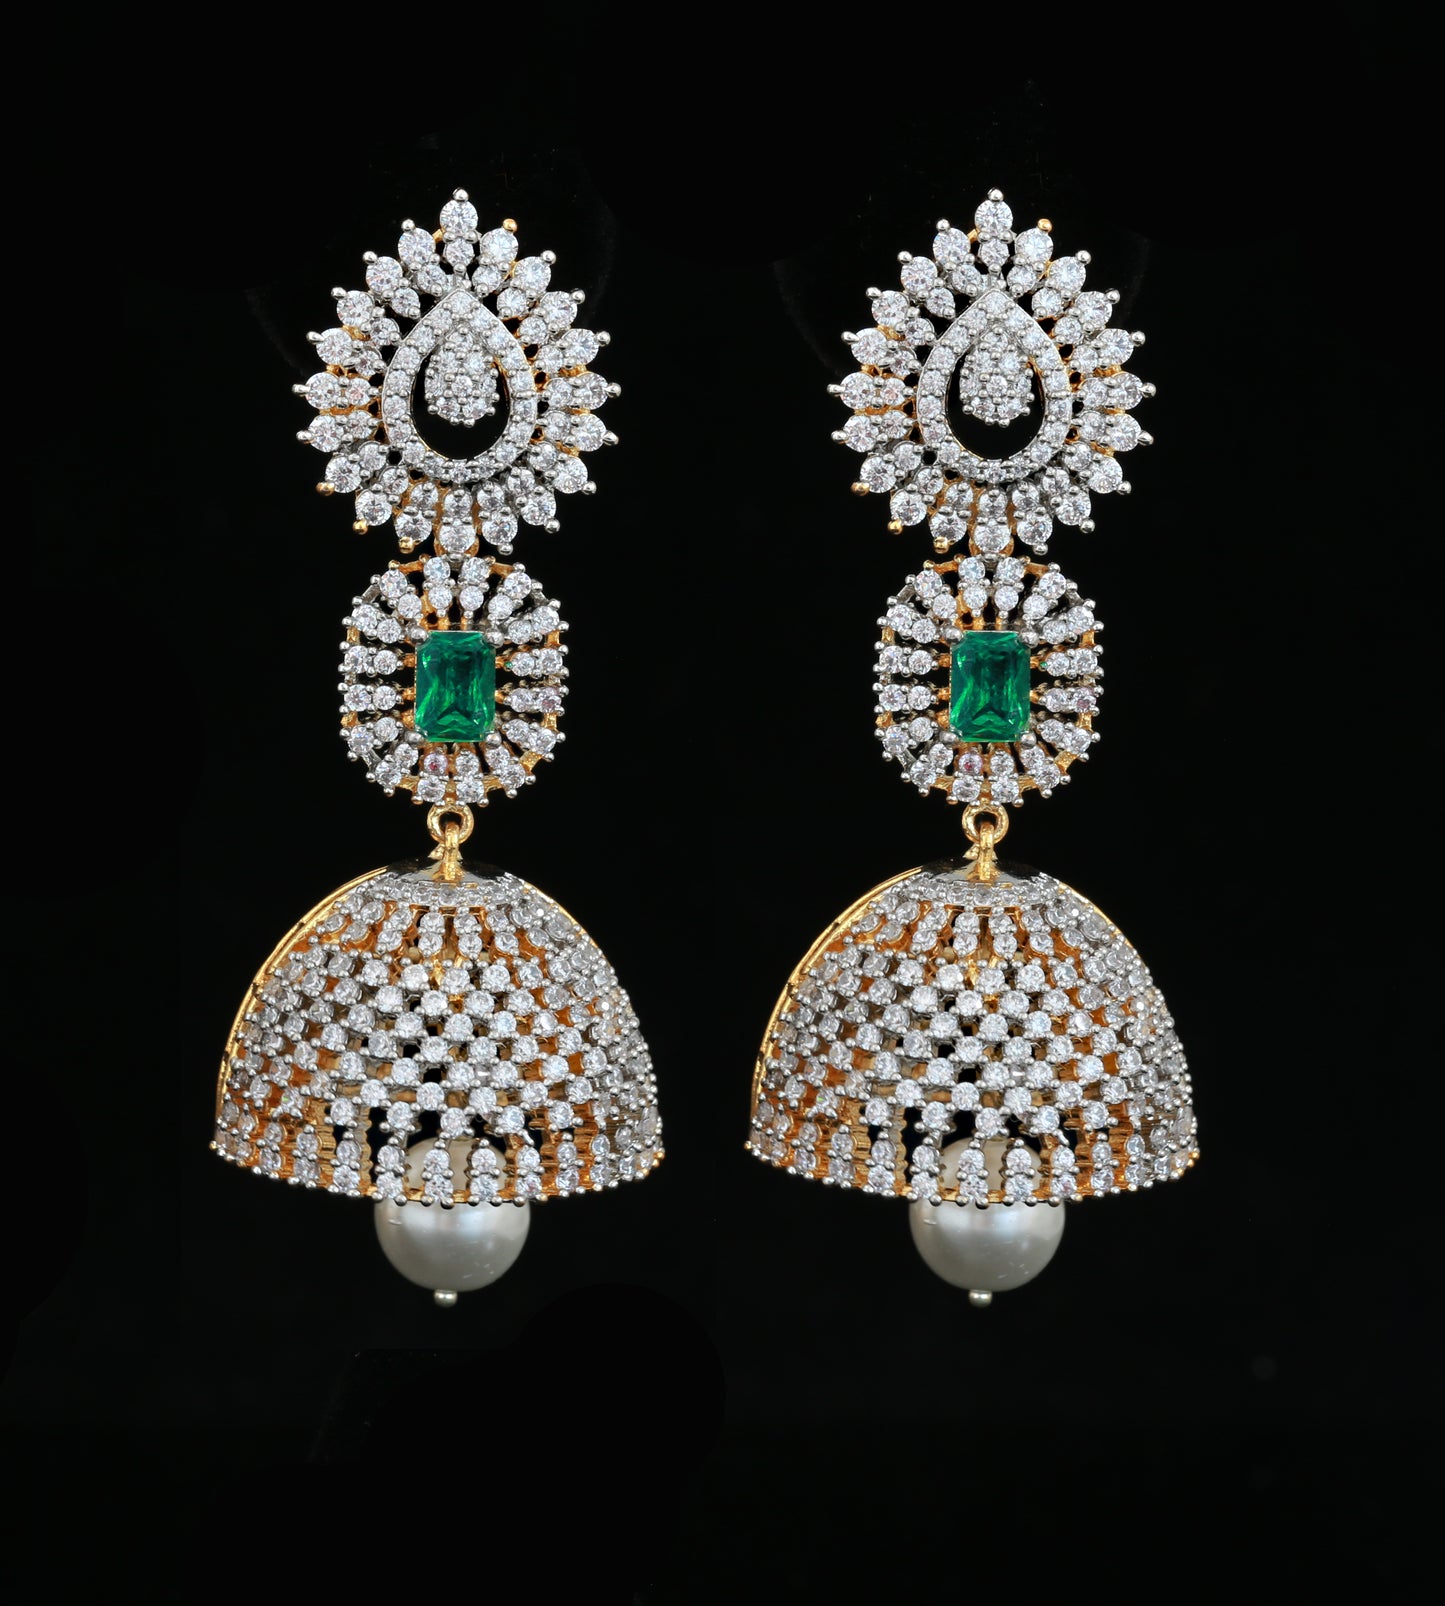 Long AD Jhumka with Pearl drop and Green Stone | Bridal Gold Jhumka design